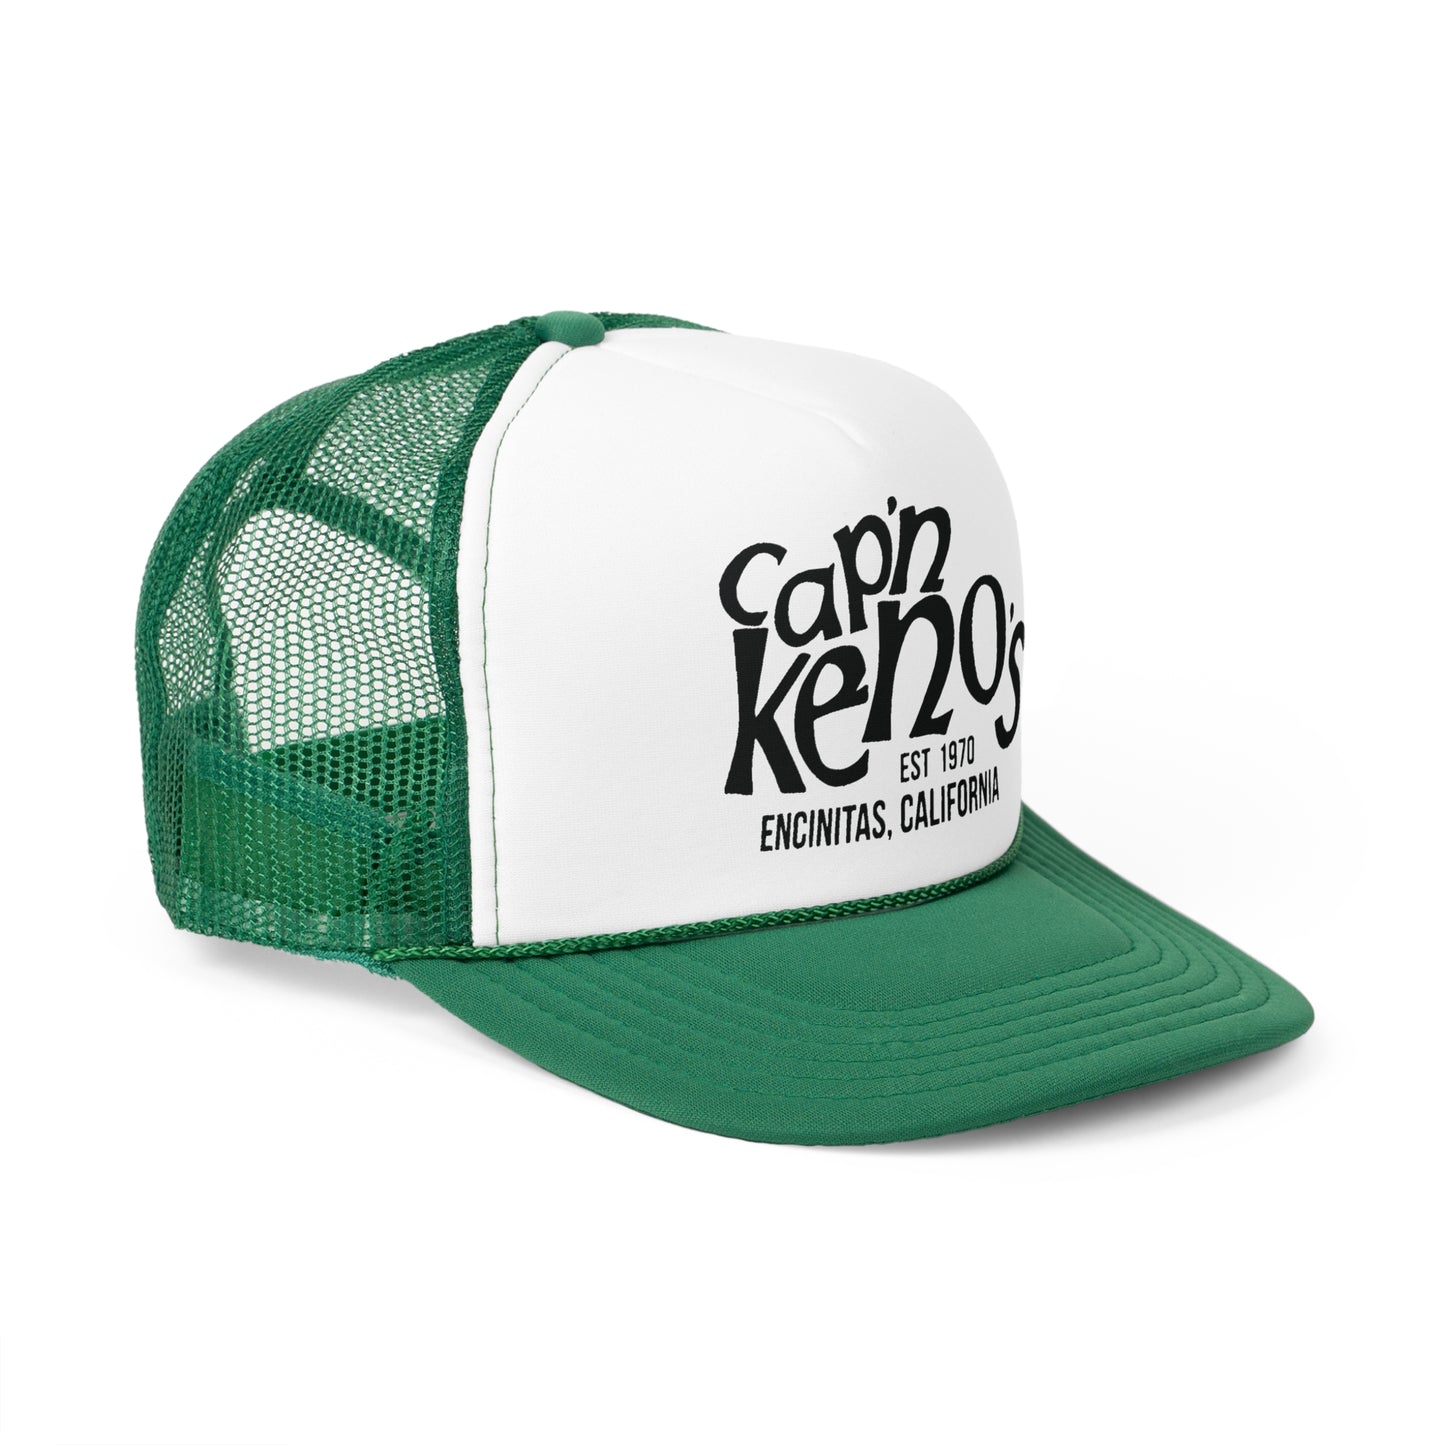 Cap'n Kenos Trucker Hats